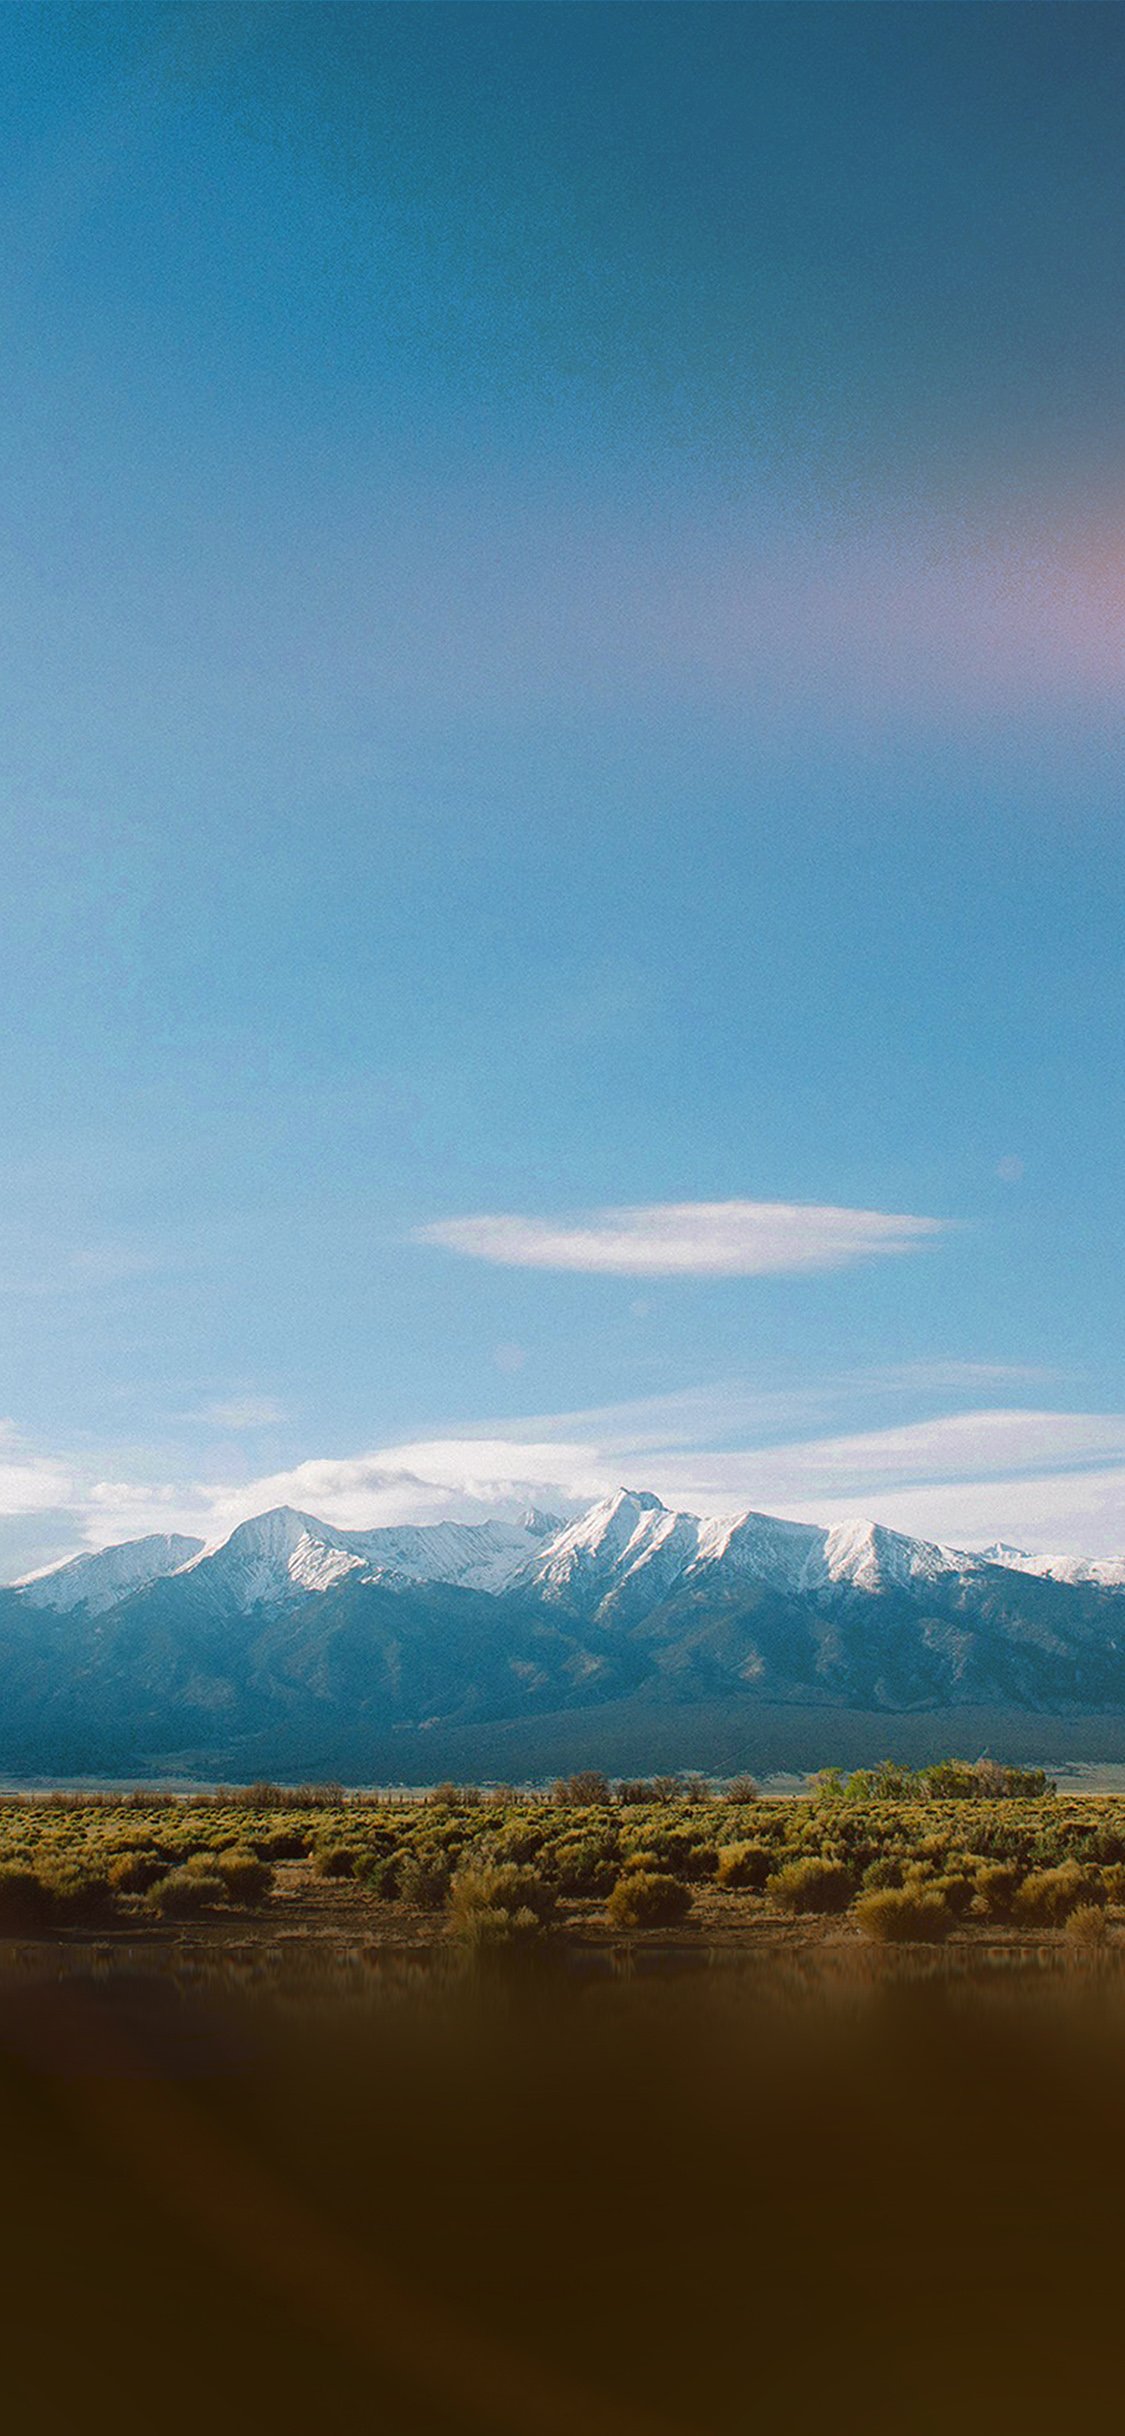 一边绿地，一边雪山，超美的大自然风景手机壁纸